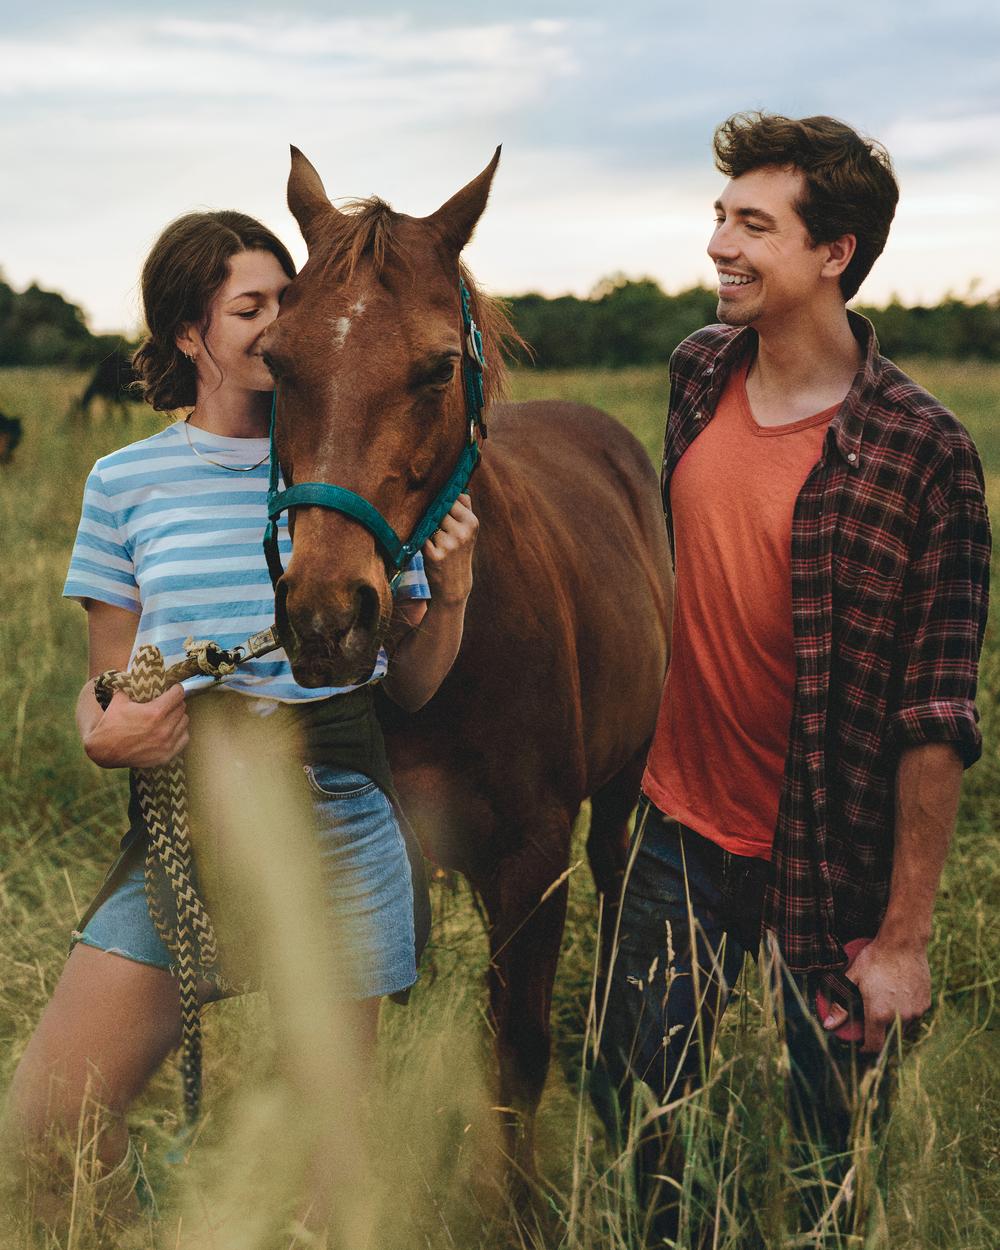 Auf einer großen Pferdeweide stehen eine junge Frau und ein junger Mann. Zwischen ihnen steht ein braunes Pferd, das die Frau am Halfter festhält.